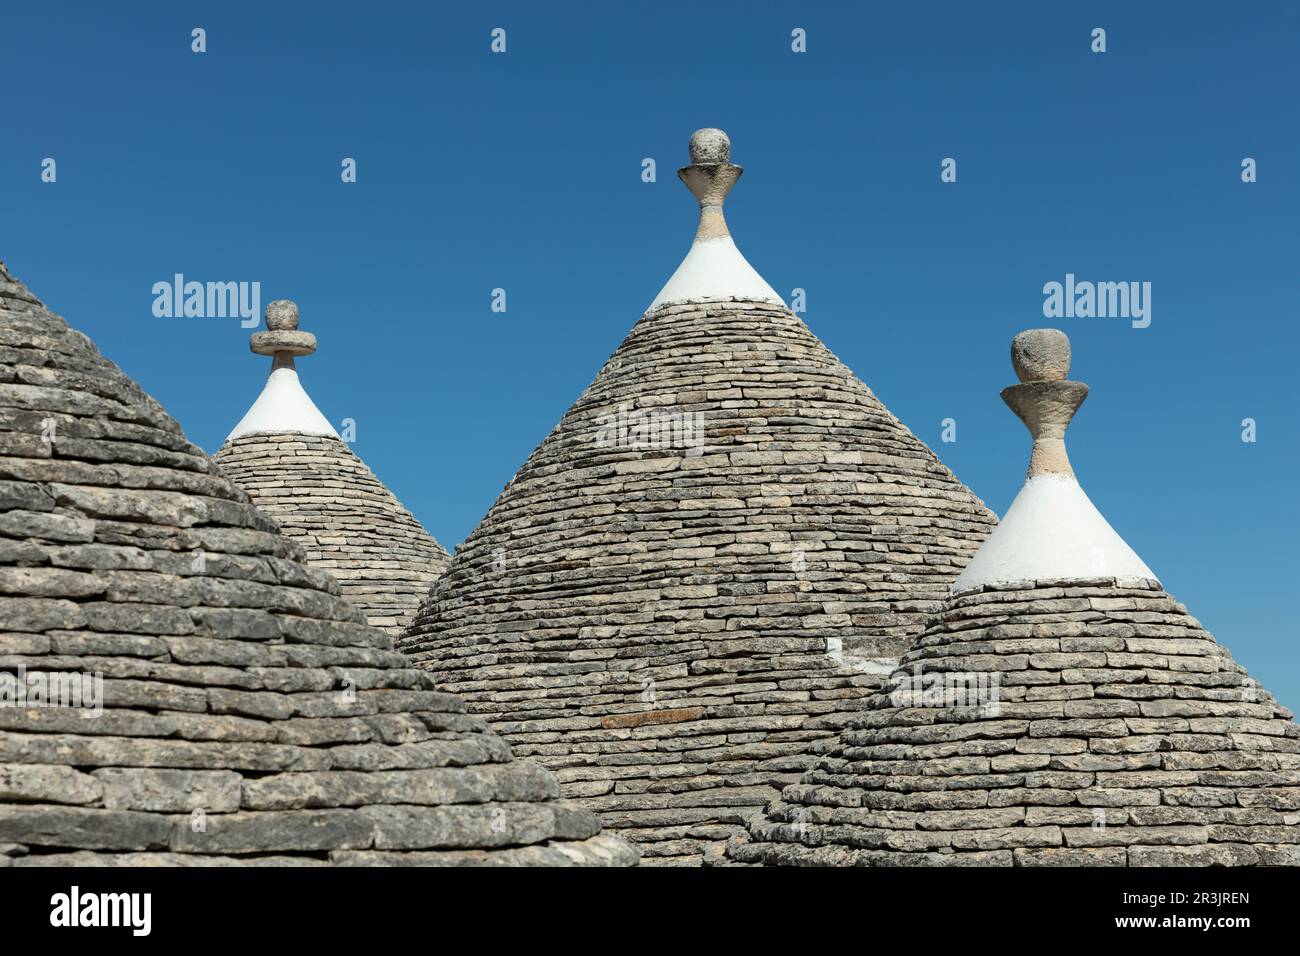 Trulli típicas casas en Alberobello, Puglia, Italia Foto de stock